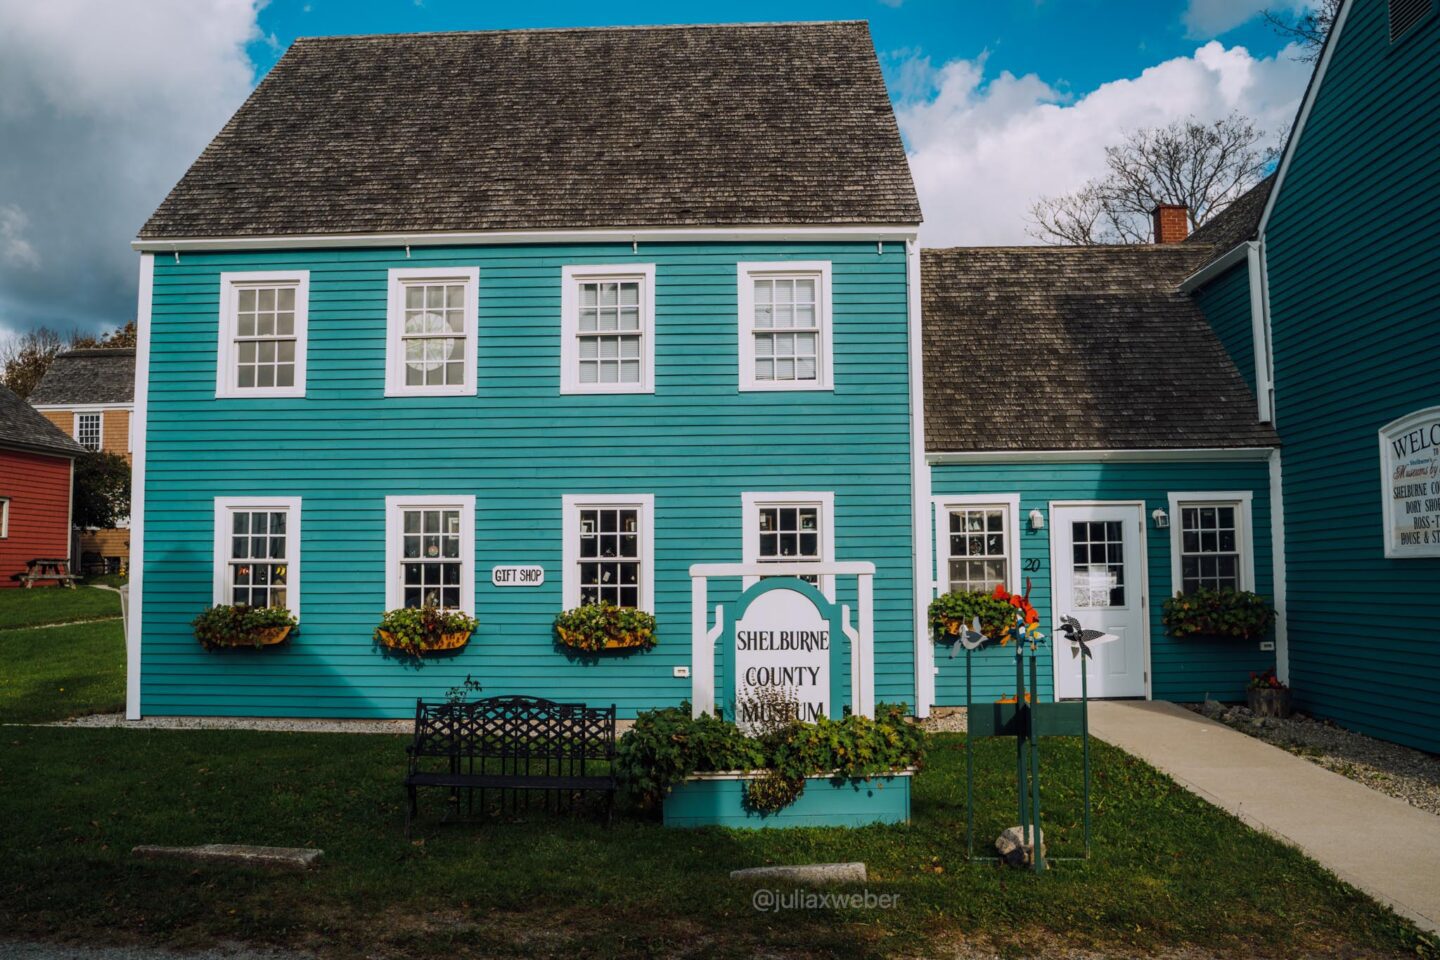 Shelburne County Museum Nova Scotia